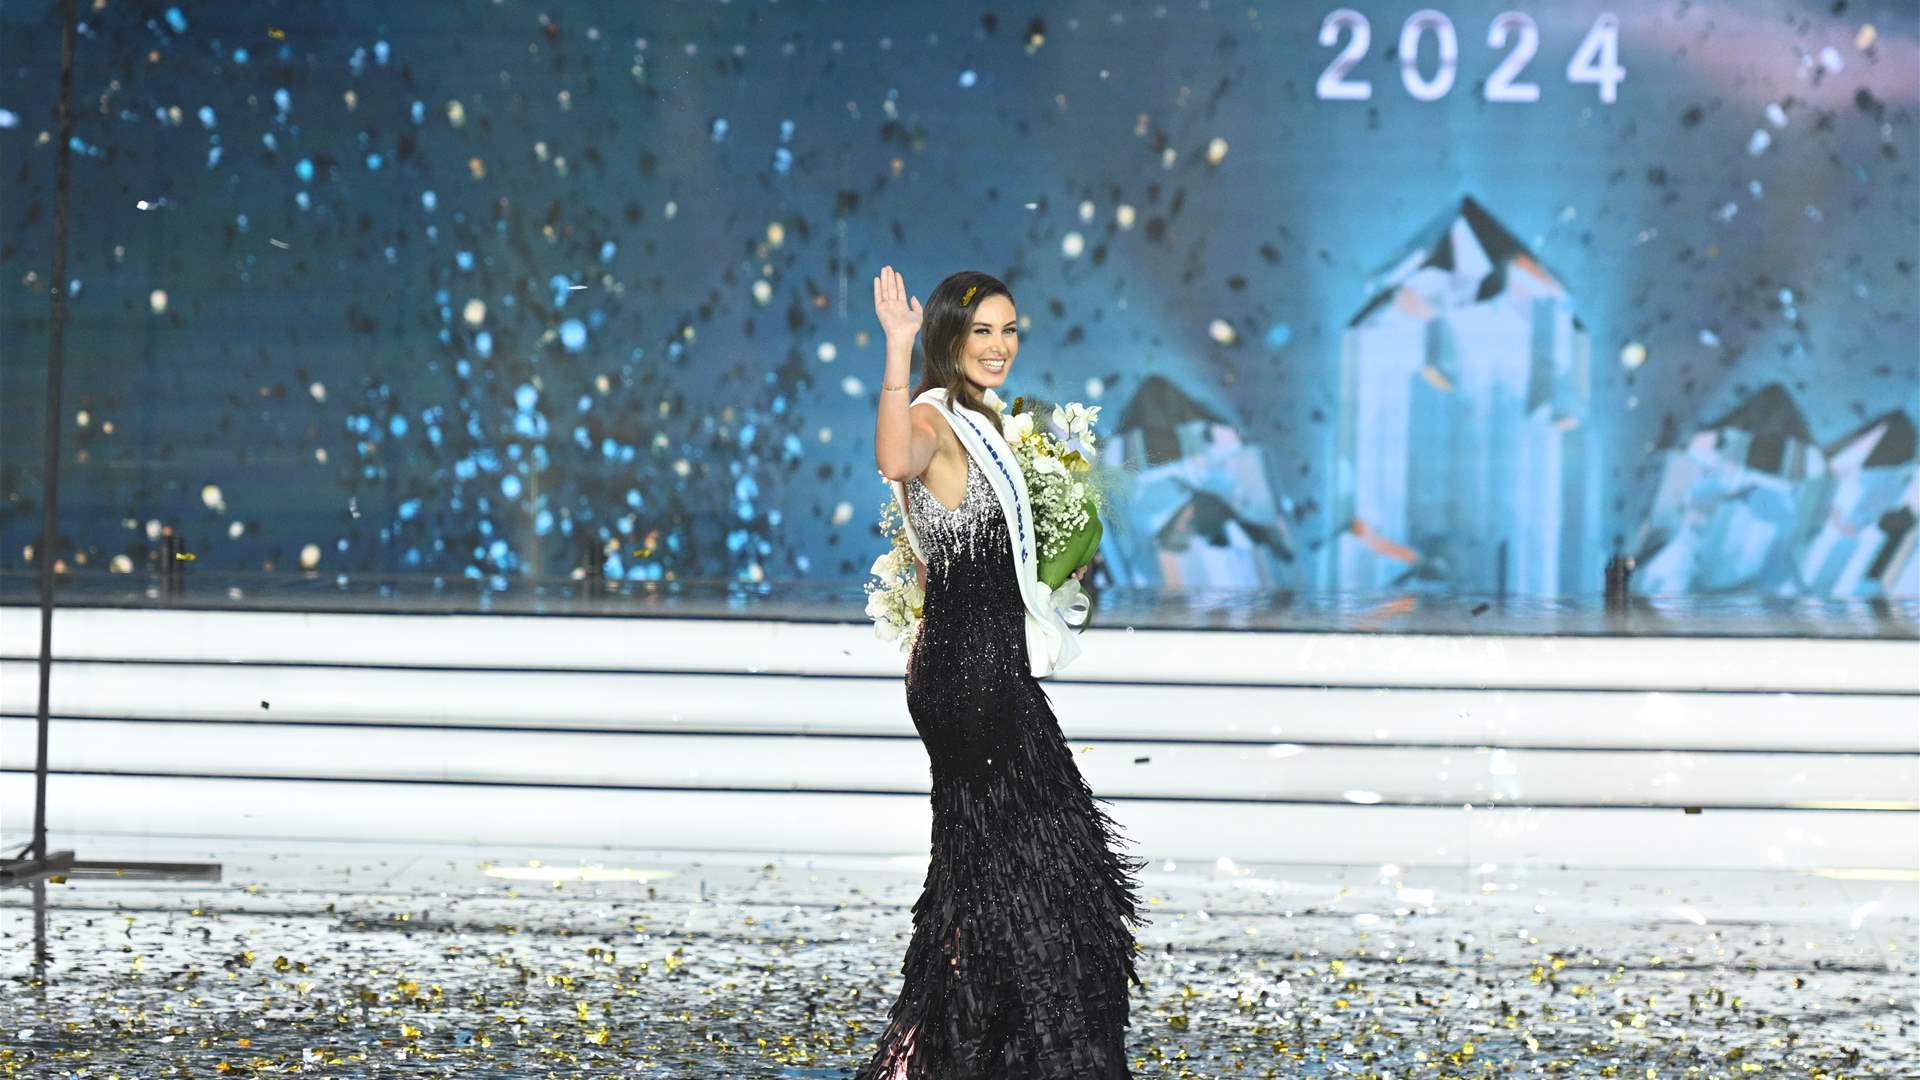 ملكة جمال لبنان ندى كوسا شاركت في فيديو كليب قديم: لأي نجمة لبنانية؟ (فيديو)